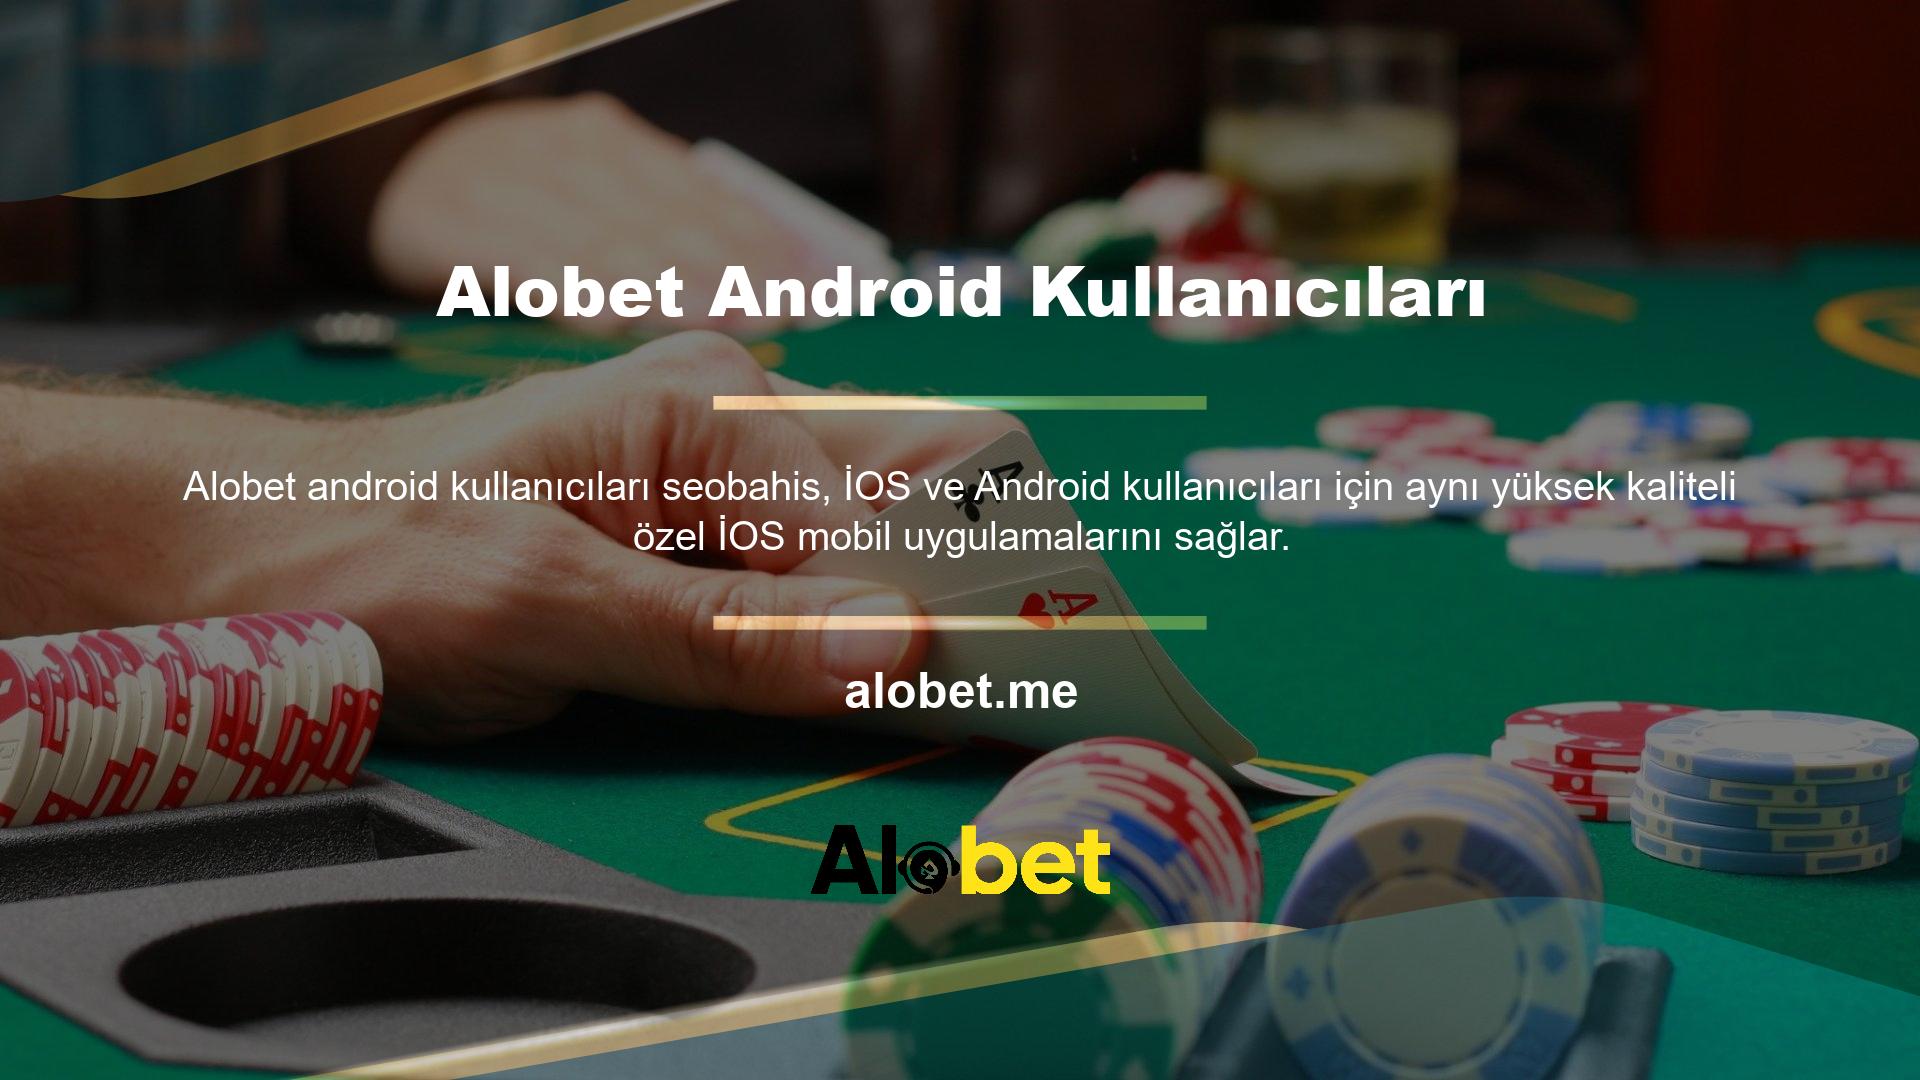 Aynı yüksek oranlara sahiptir ve Alobet aracılığıyla canlı casino, online casino, spor bahisleri, poker ve spor dahil tüm bahis pazarlarına erişim sağlar